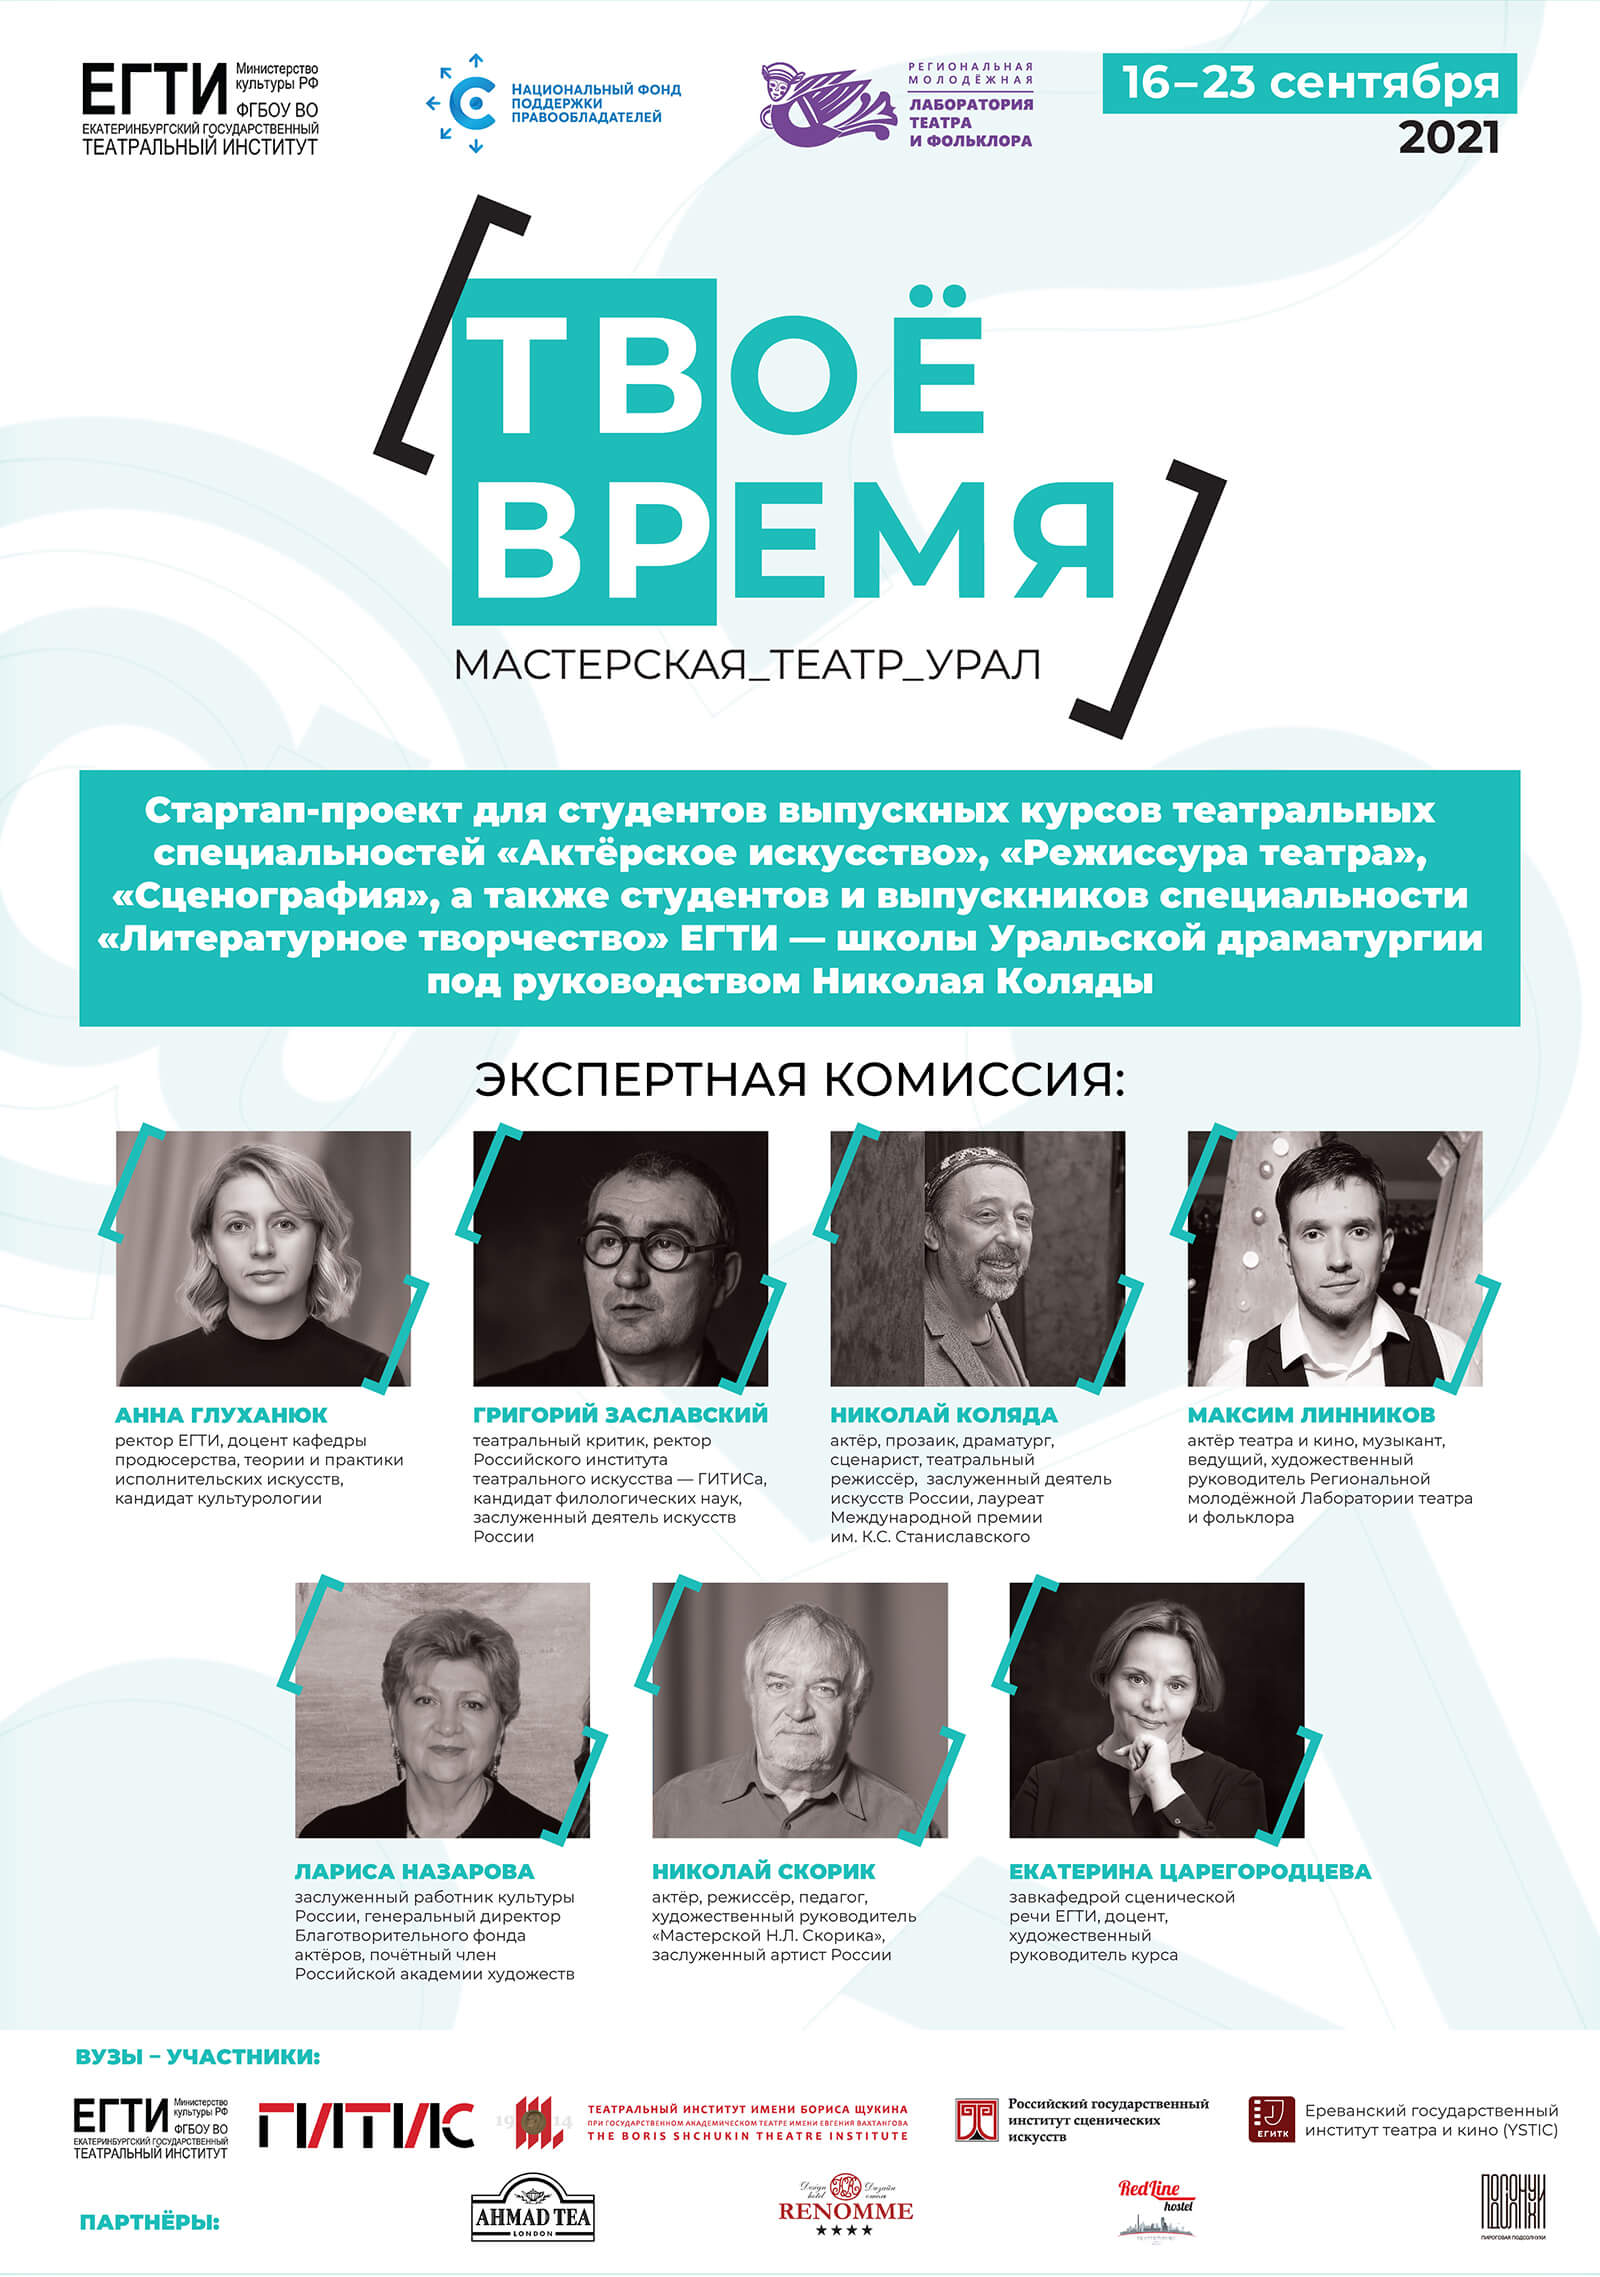 Очный этап студенческого театрального проекта «Мастерская_Театр_Урал «Твоё время» пройдёт в Екатеринбурге с 16 по 23 сентября